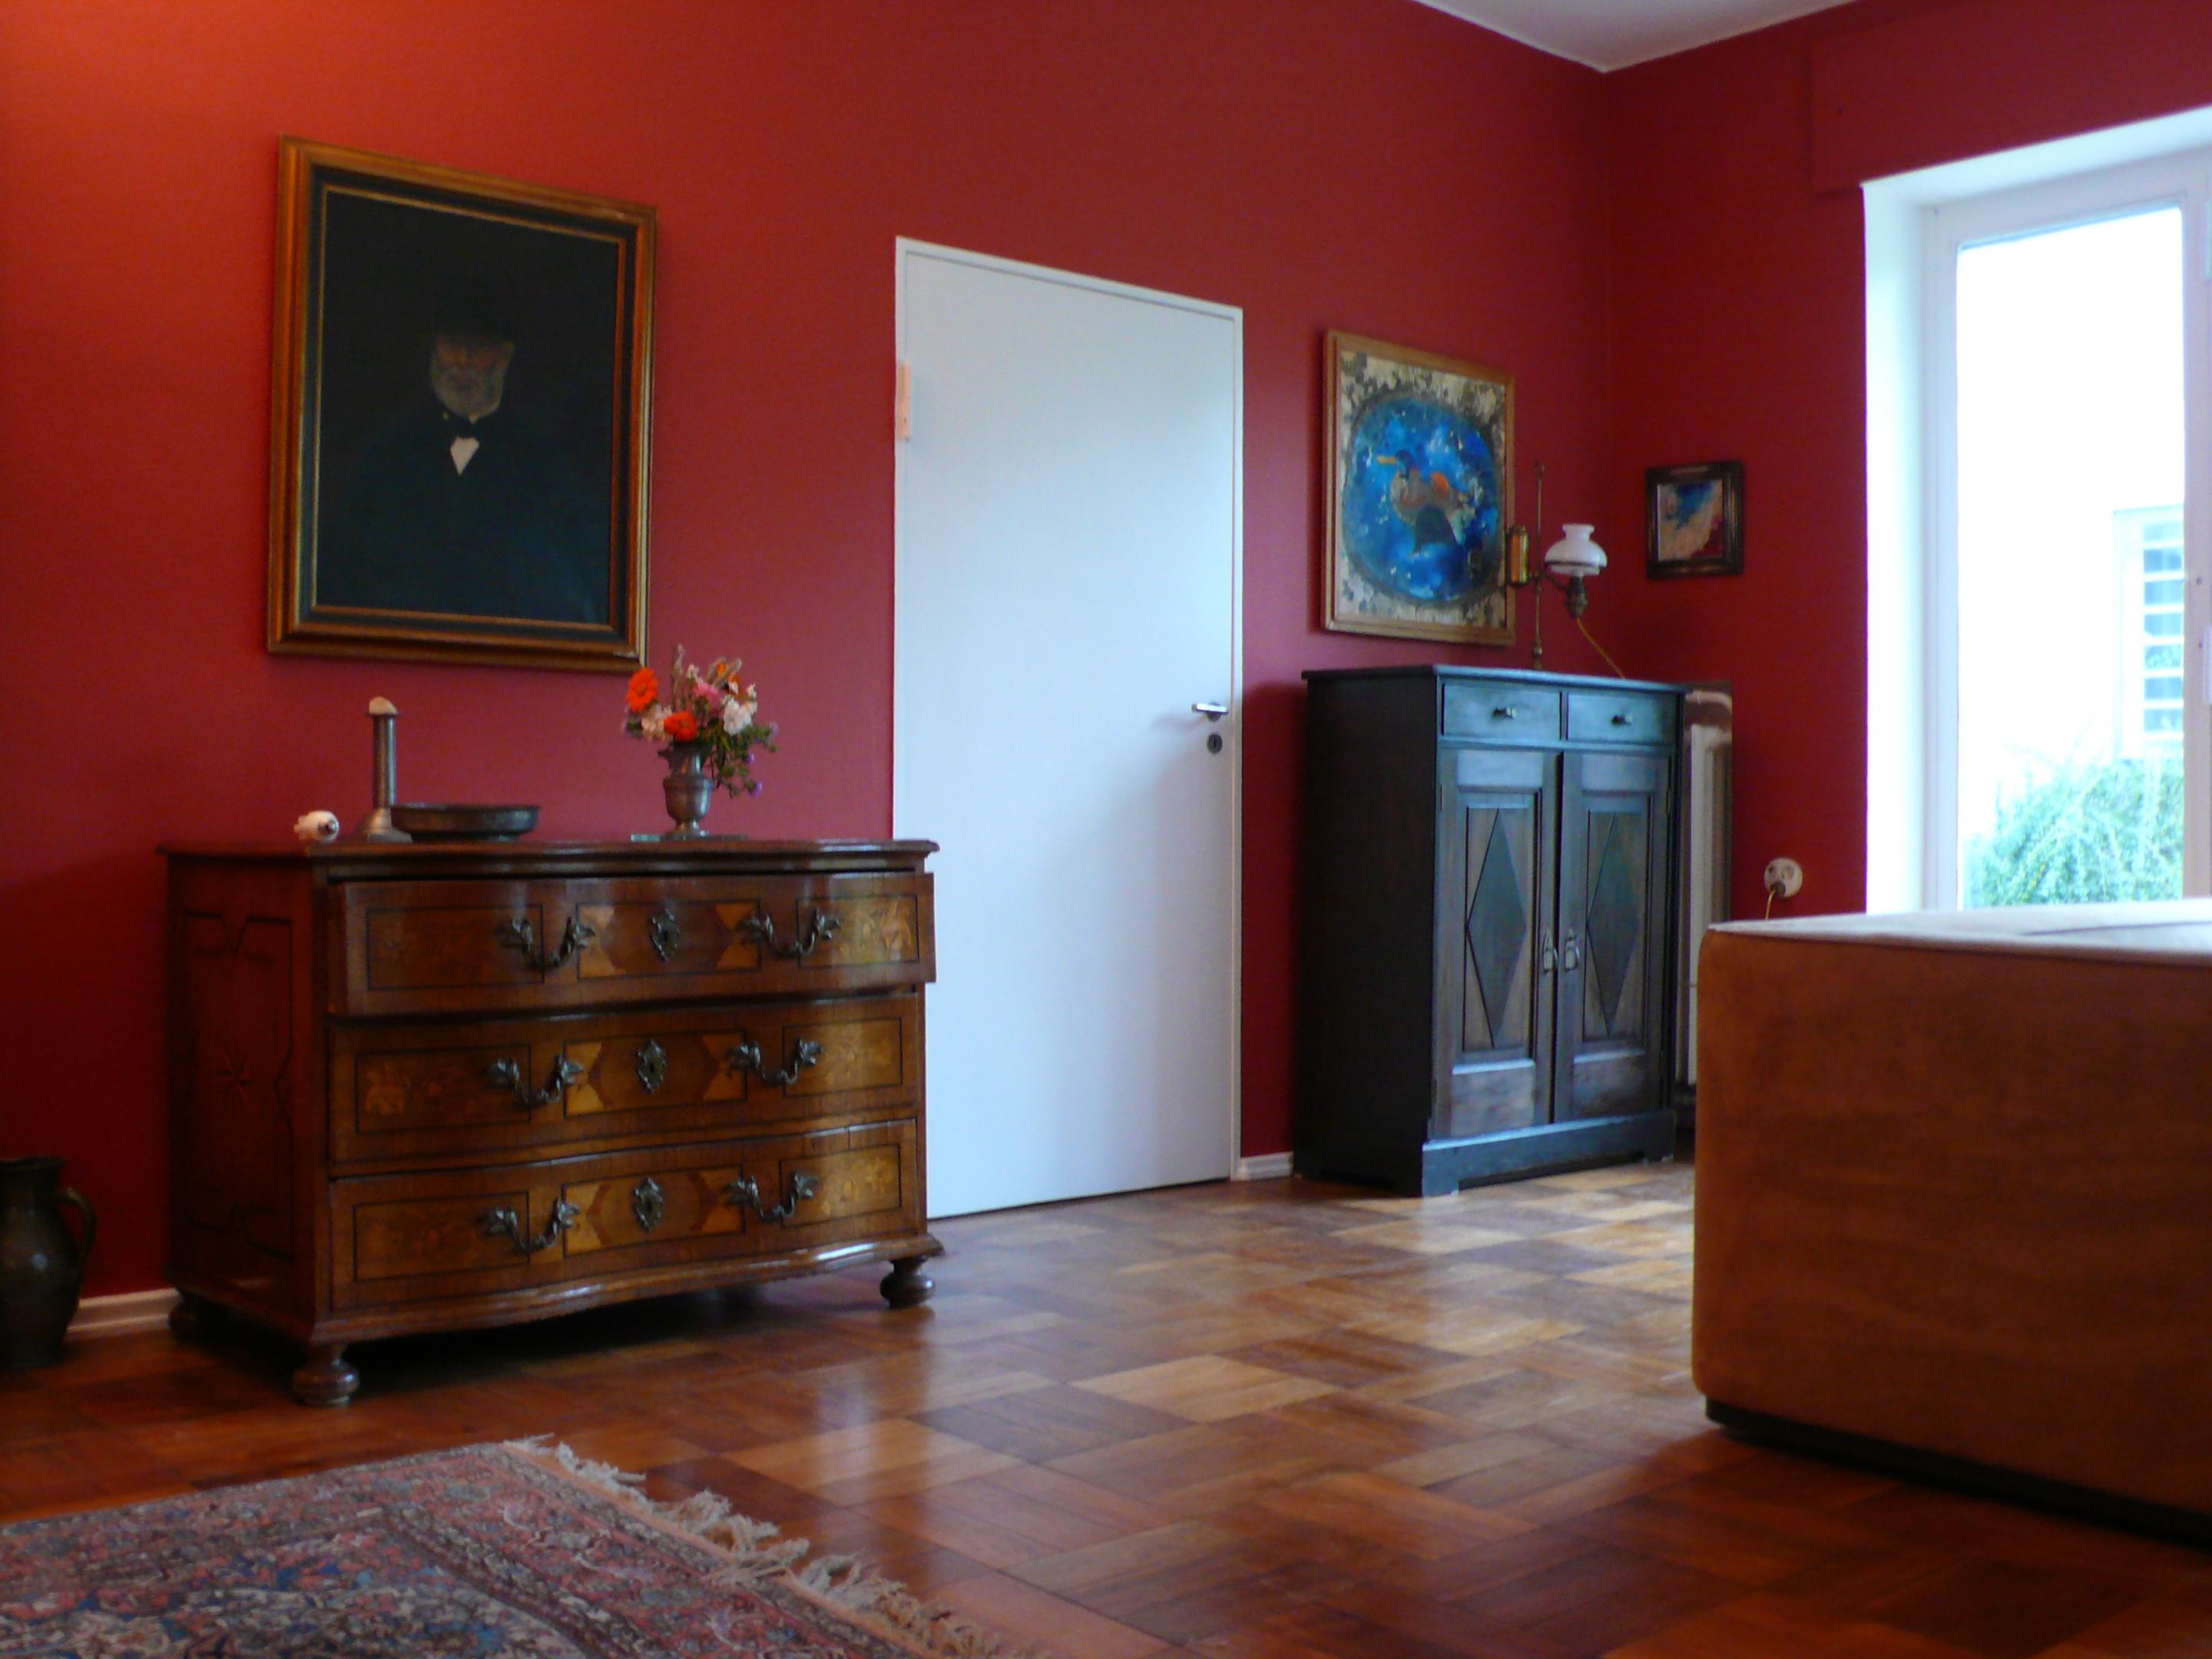 Wohnzimmer in Red #wandfarbe #wandgestaltung #kommode #perserteppich #rotewandfarbe ©Bluegray Design Adrian Ochse